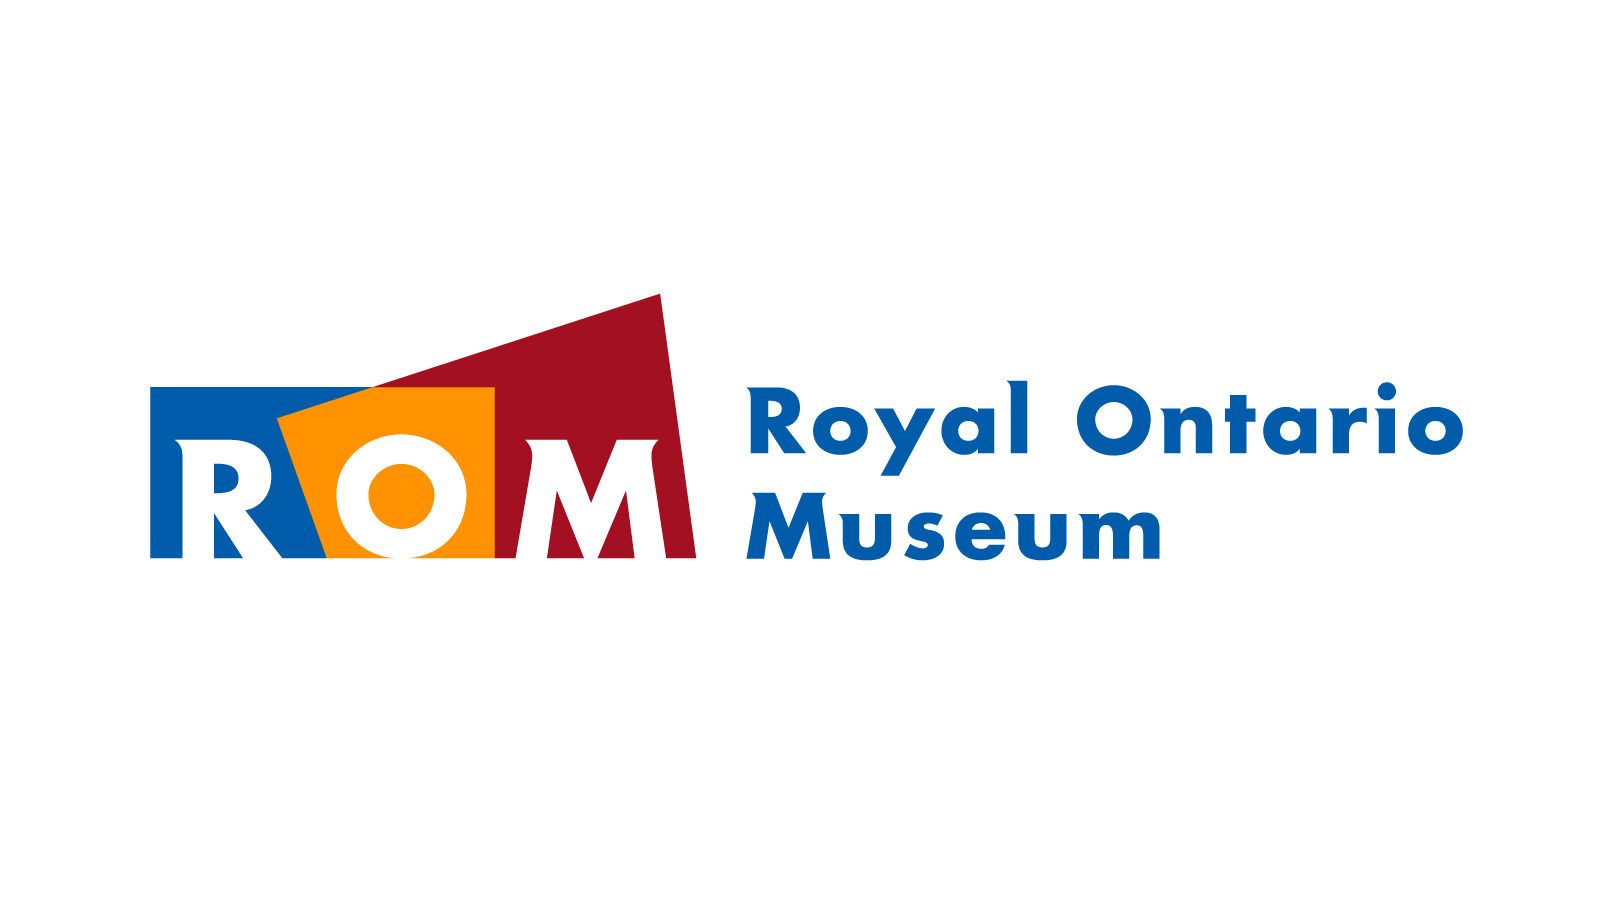 Royal Ontario Museum | Brand Identity | Design